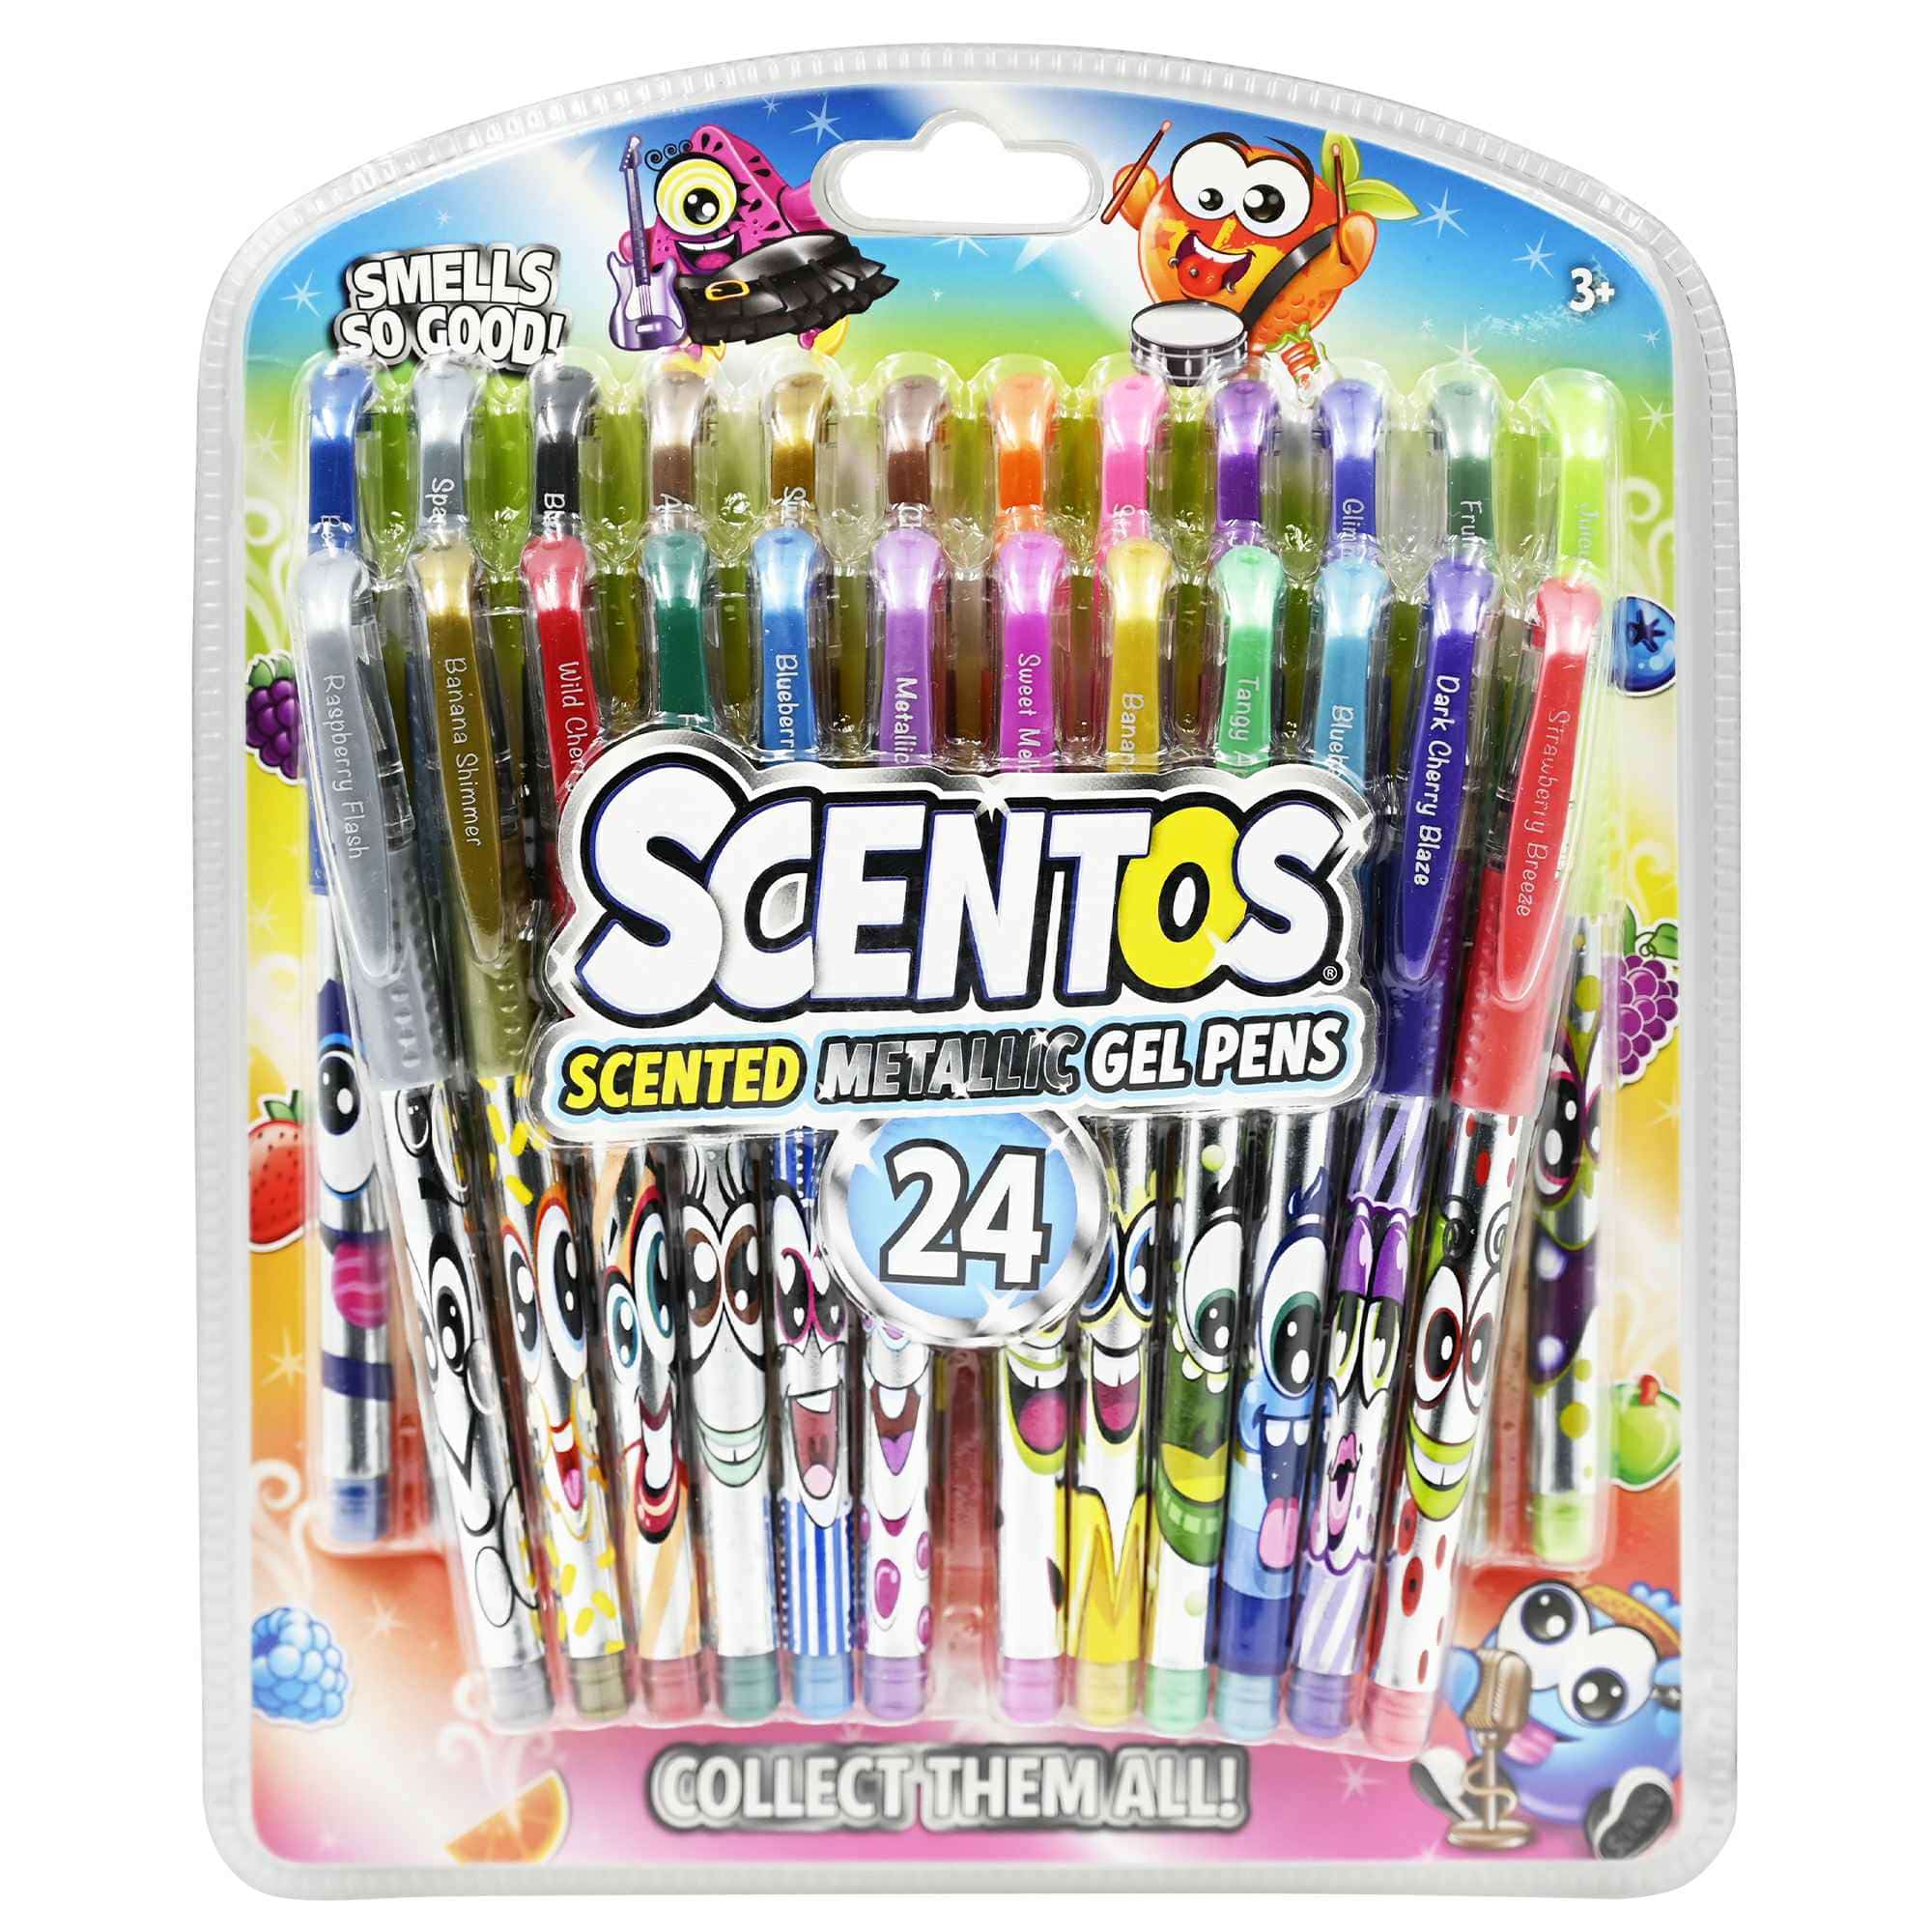 Scentos Scented Metallic Gel Pen 24 Count Set